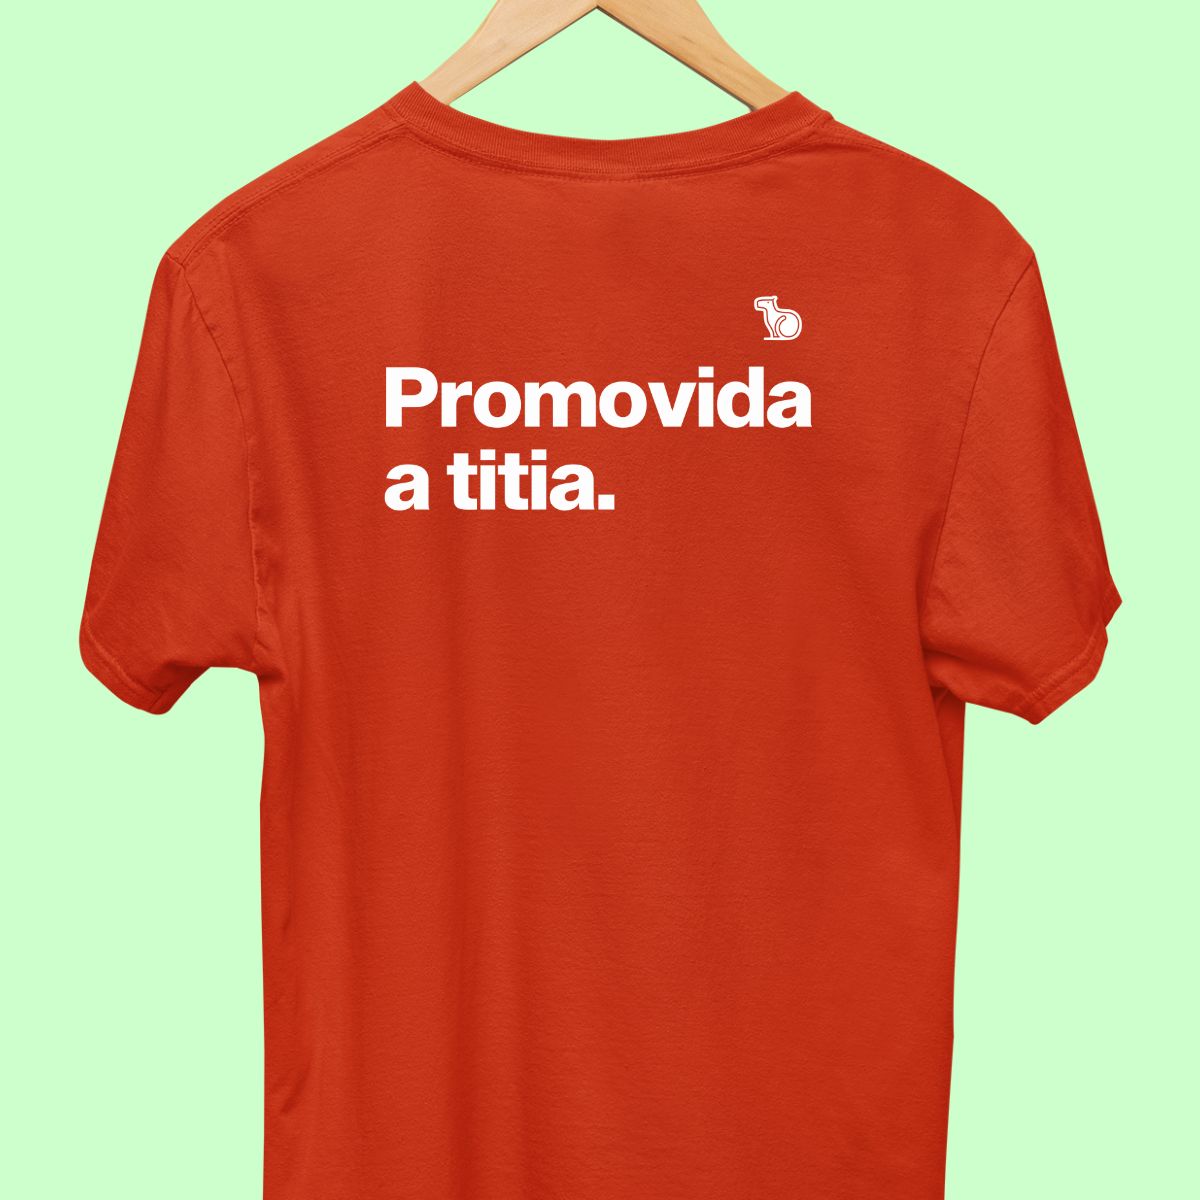 Camiseta com a frase "promovida a titia" masculina vermelha.